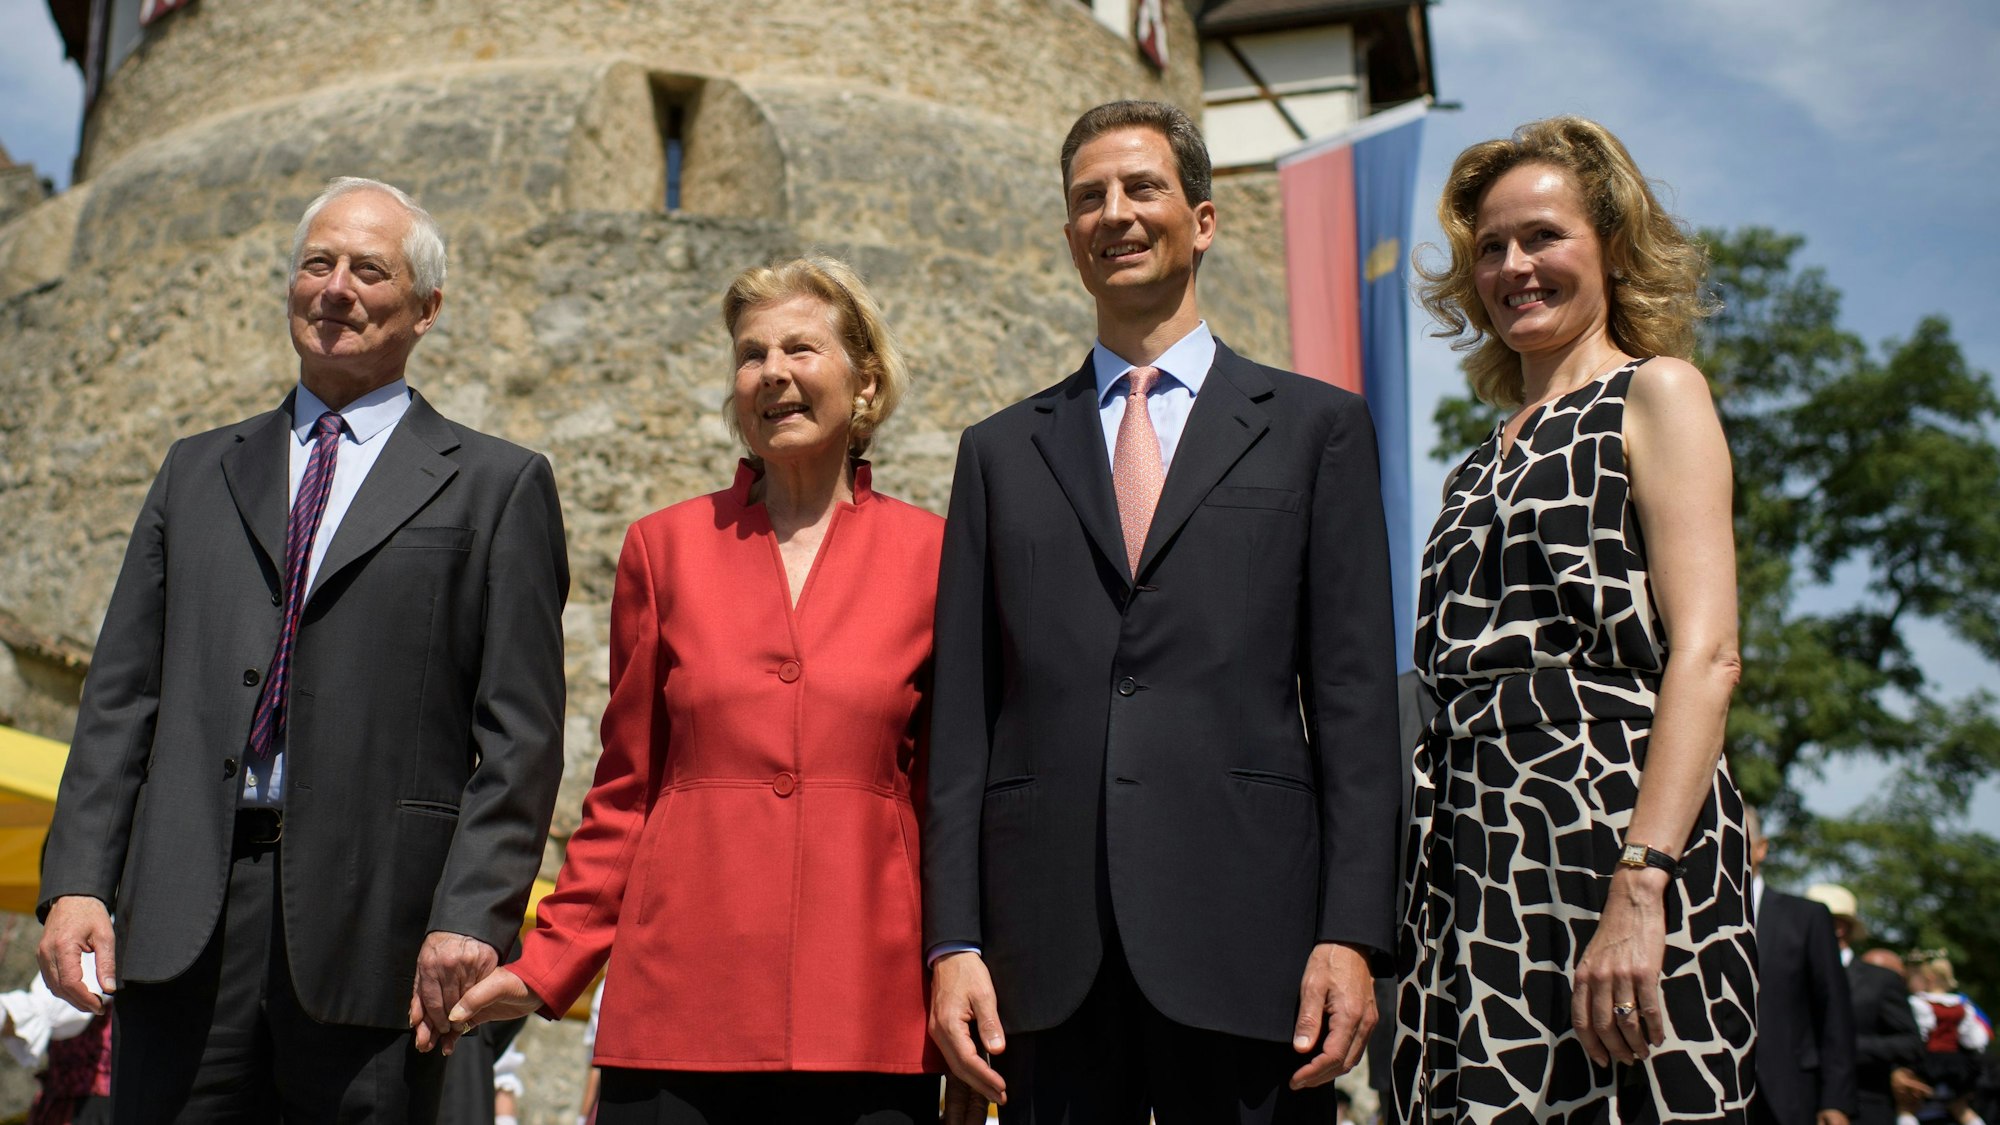 Die fürstliche Familie mit Fürst Hans-Adam II. von Liechtenstein (lr-), Fürstin Marie, Erbprinz Alois von und zu Liechtenstein und Erbprinzessin Sophie schreitet zum Liechtensteiner Staatsfeiertag.